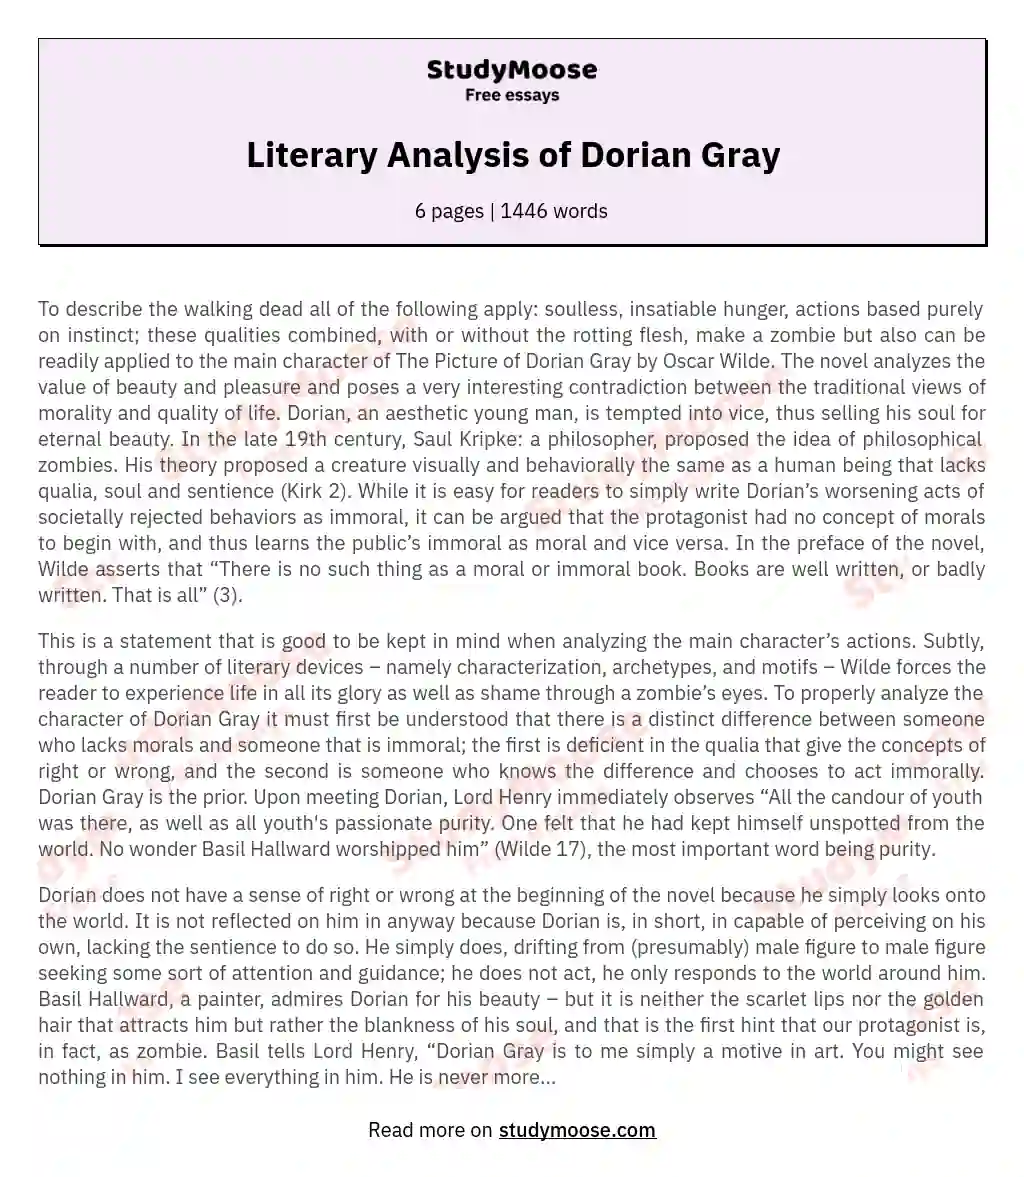 Literary Analysis of Dorian Gray